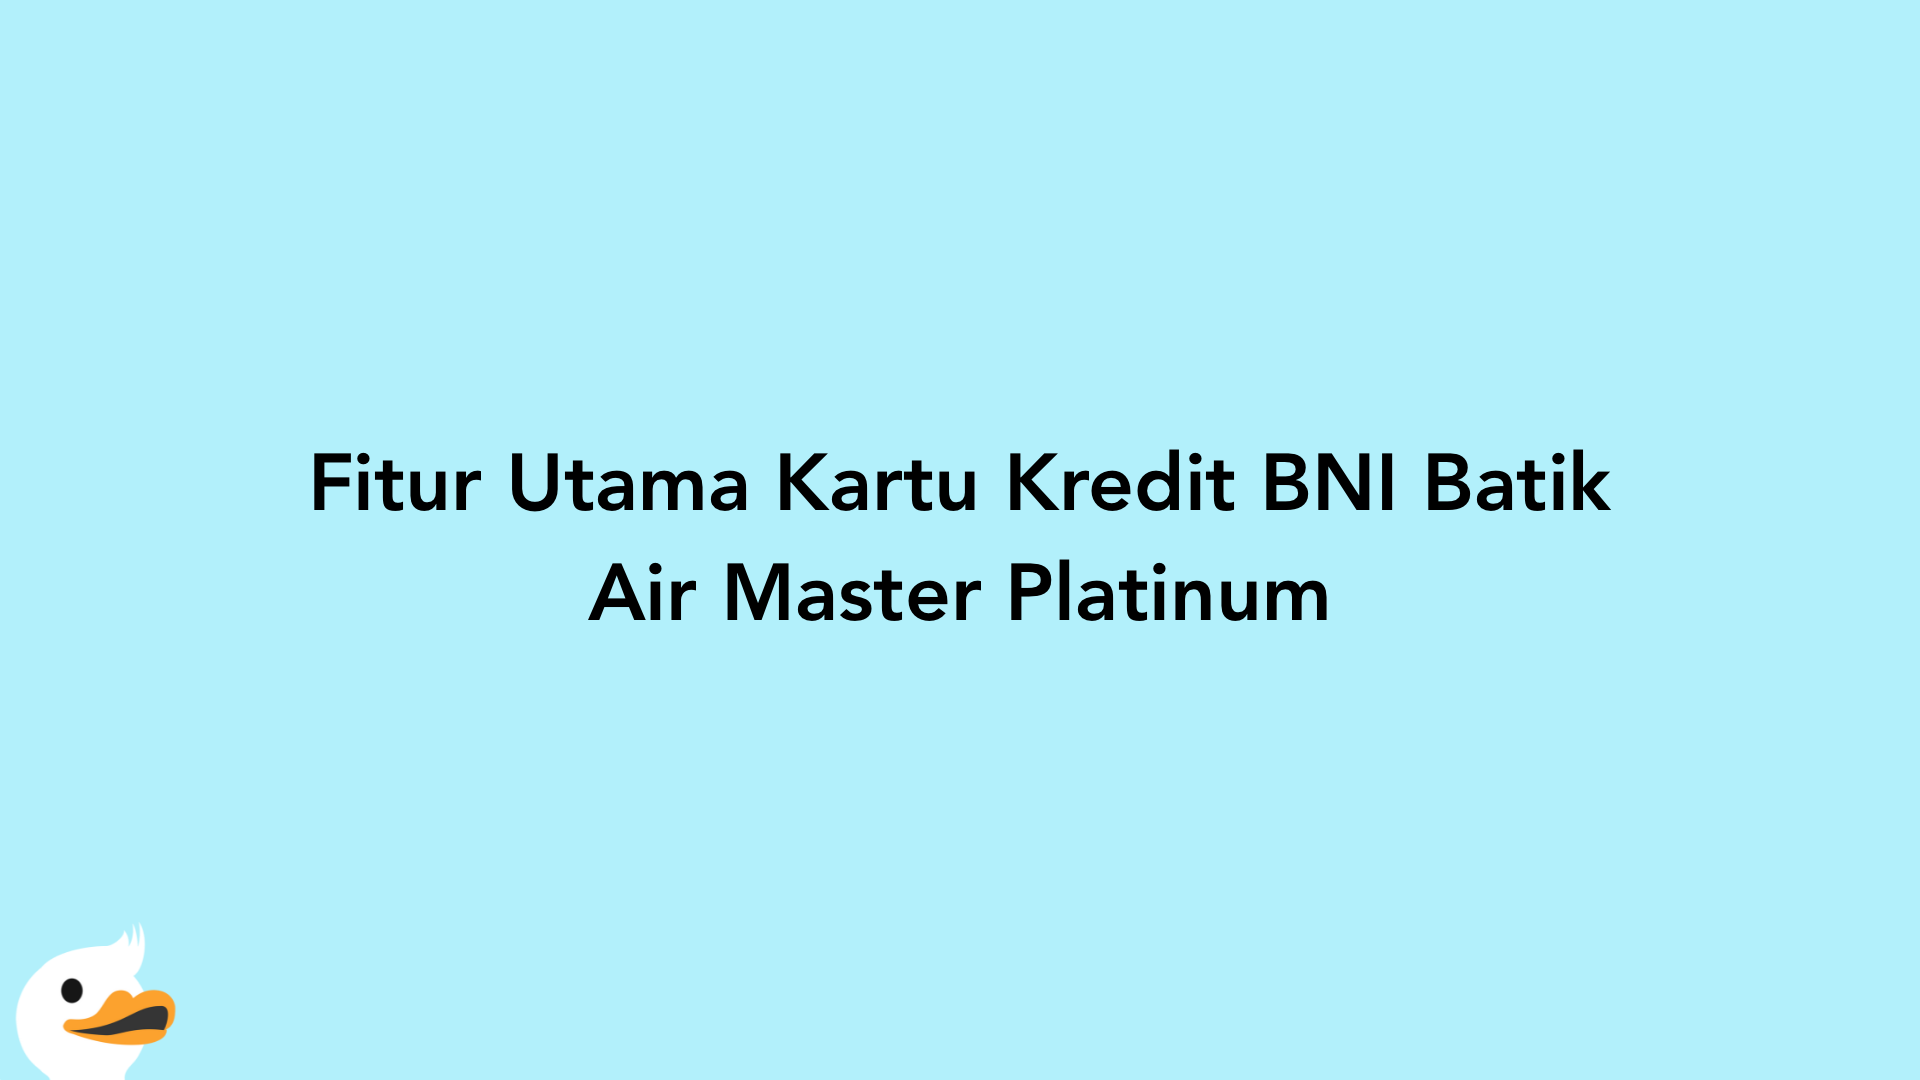 Fitur Utama Kartu Kredit BNI Batik Air Master Platinum